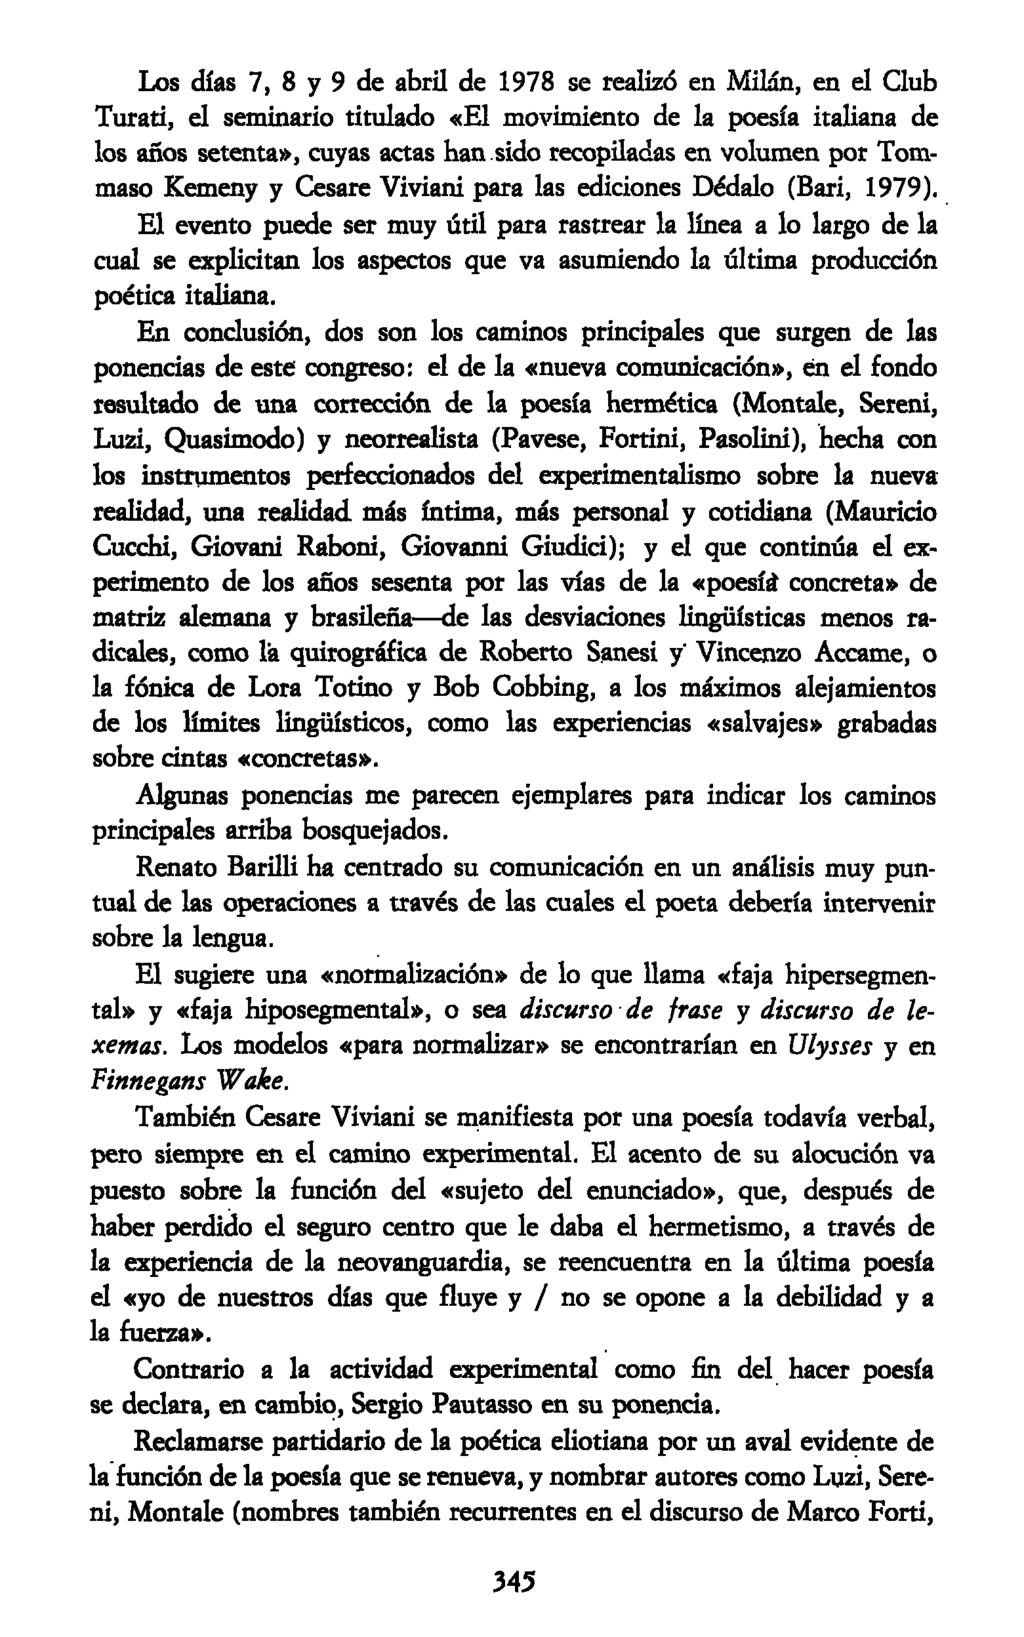 Los días 7, 8 y 9 de abril de 1978 se realizó en Milán, en el Club Turati, el seminario titulado «El movimiento de la poesía italiana de los años setenta», cuyas actas han sido recopiladas en volumen